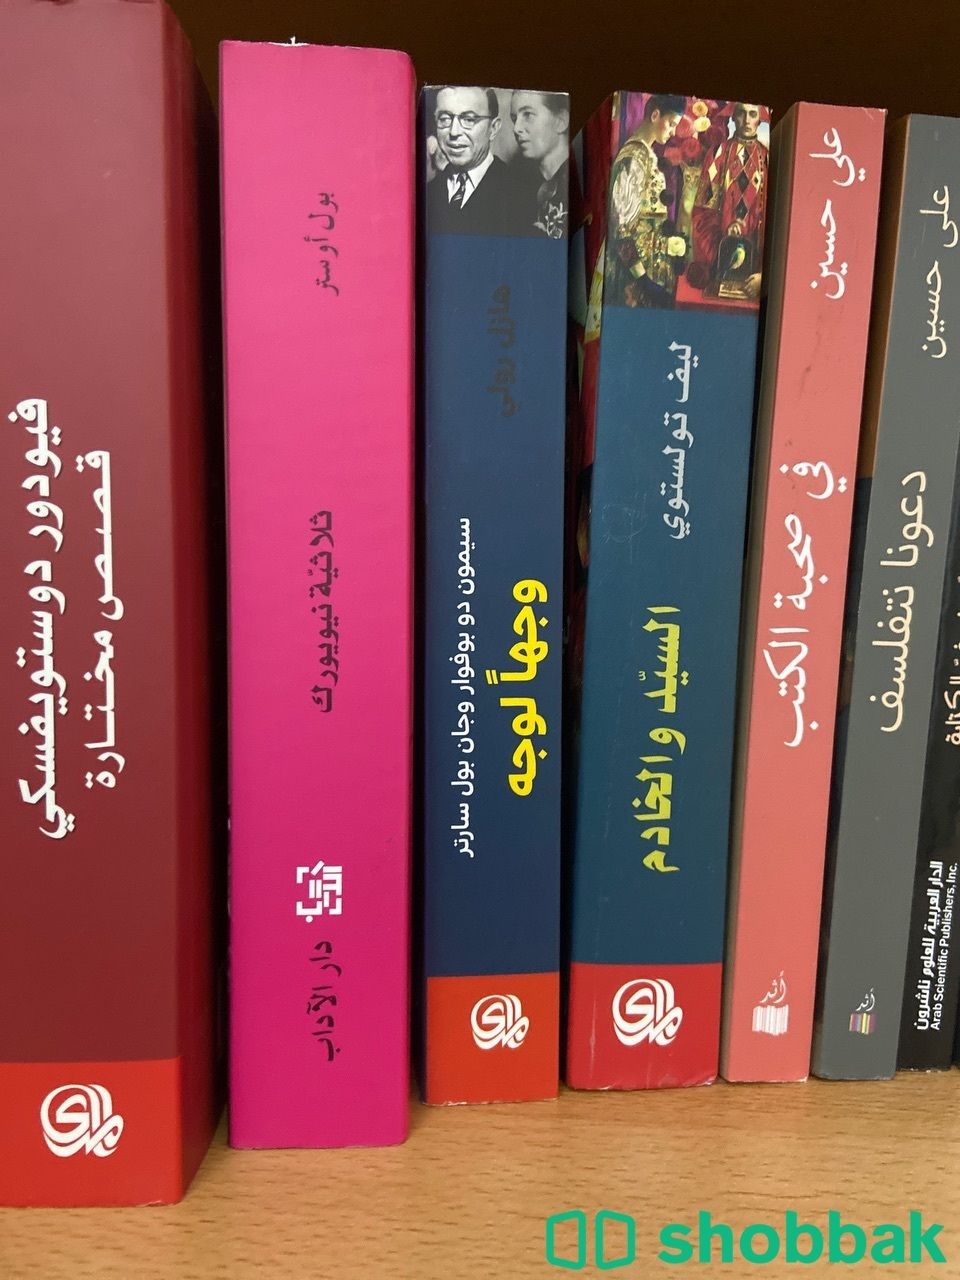 مجموعة كتب جديدة وقيمة وتراثية  شباك السعودية